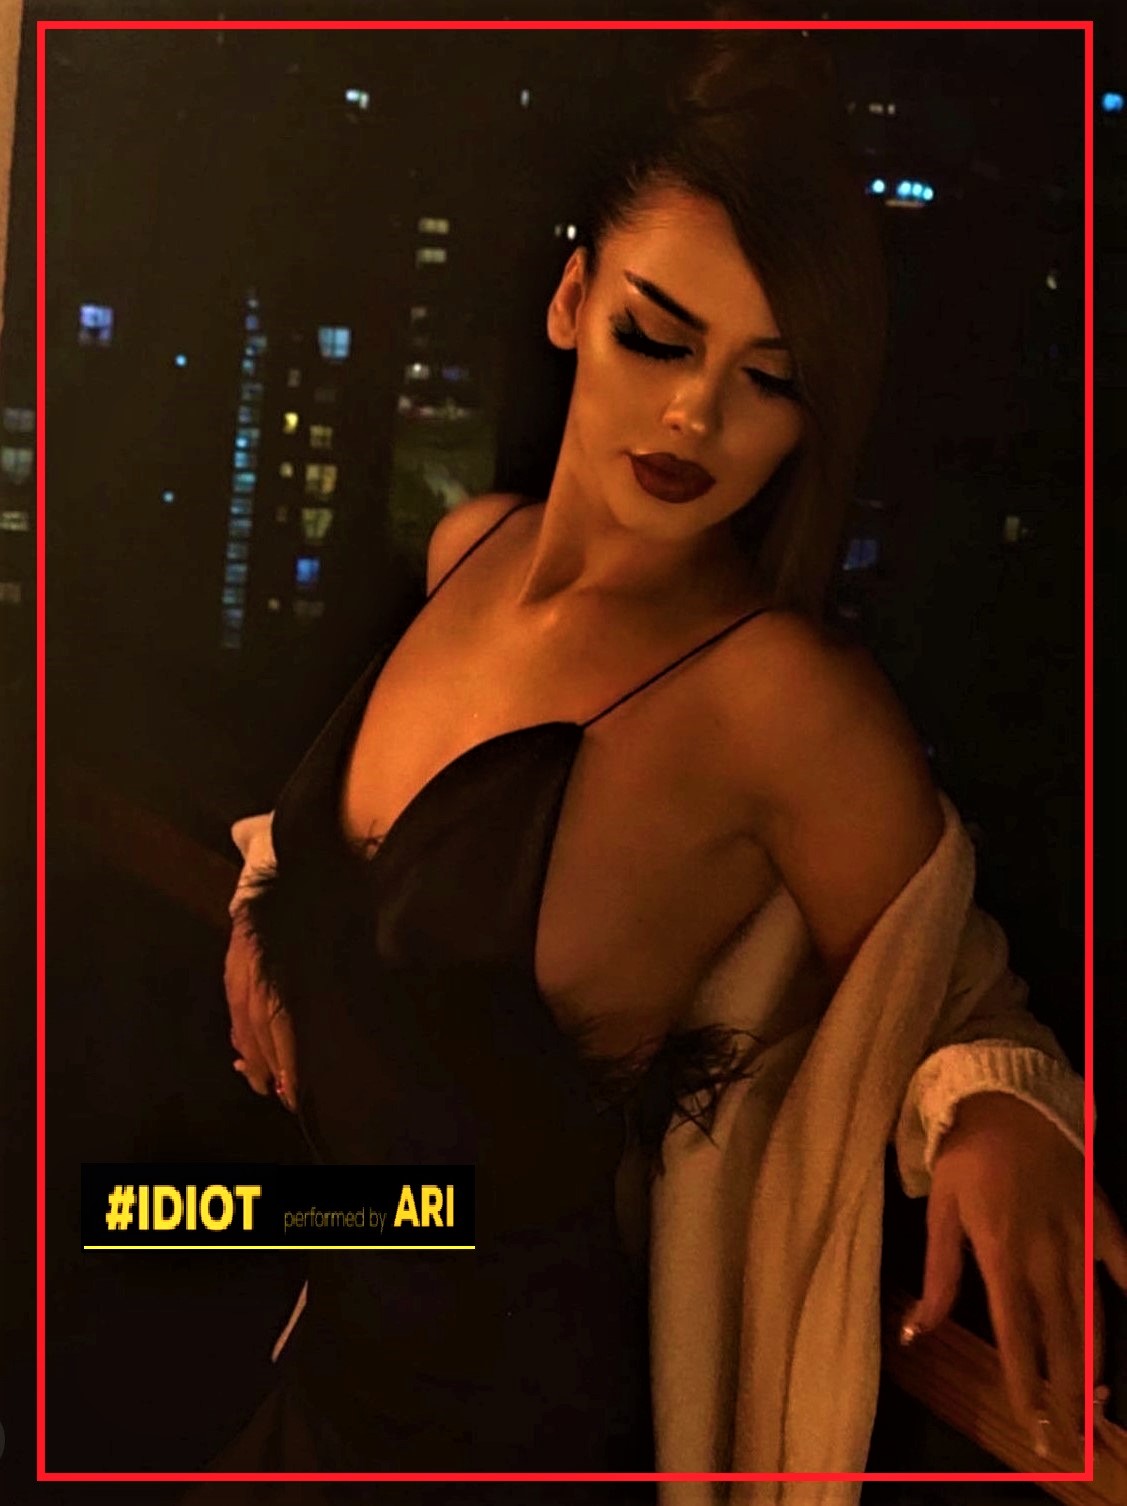 Këngëtarja shqiptare nga Gjermania, publikon projektin e ri muzikor “Idiot”